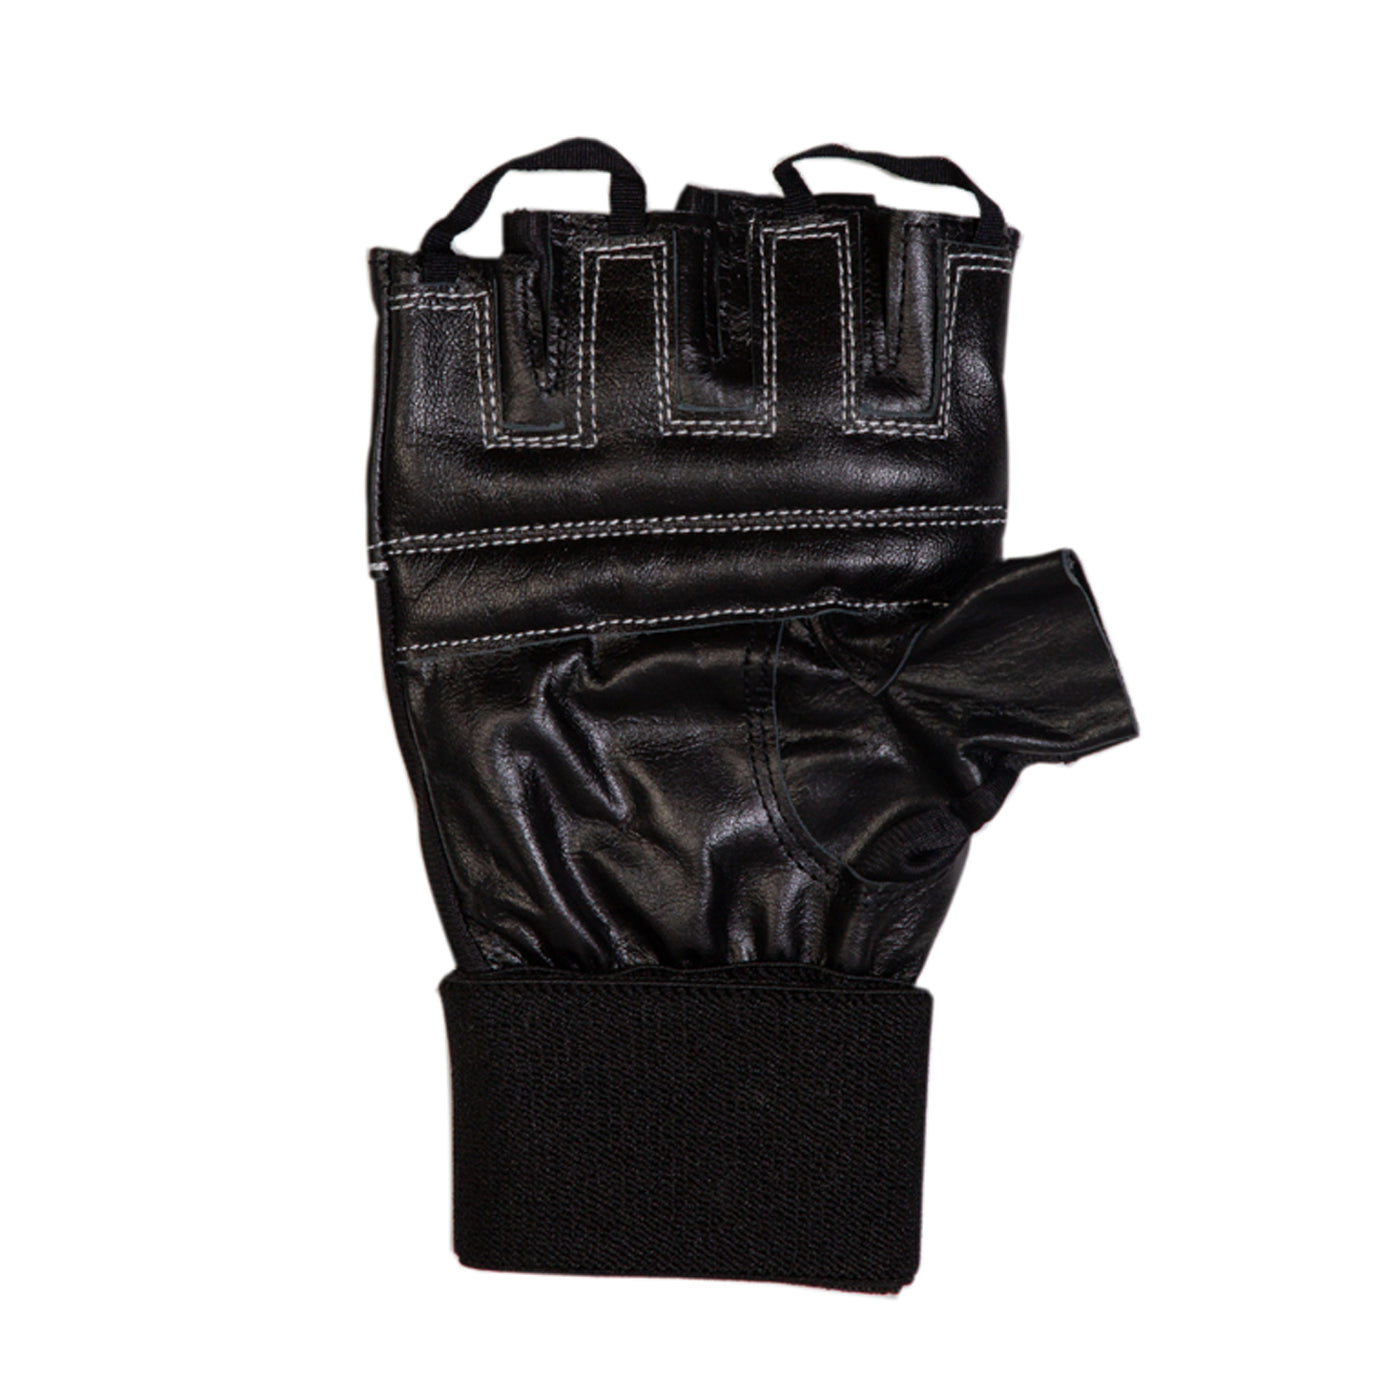 Tenstar Tenstar Avenger Gym Fitness Gloves - Black freeshipping - athletive Gym Gloves - Men athletive